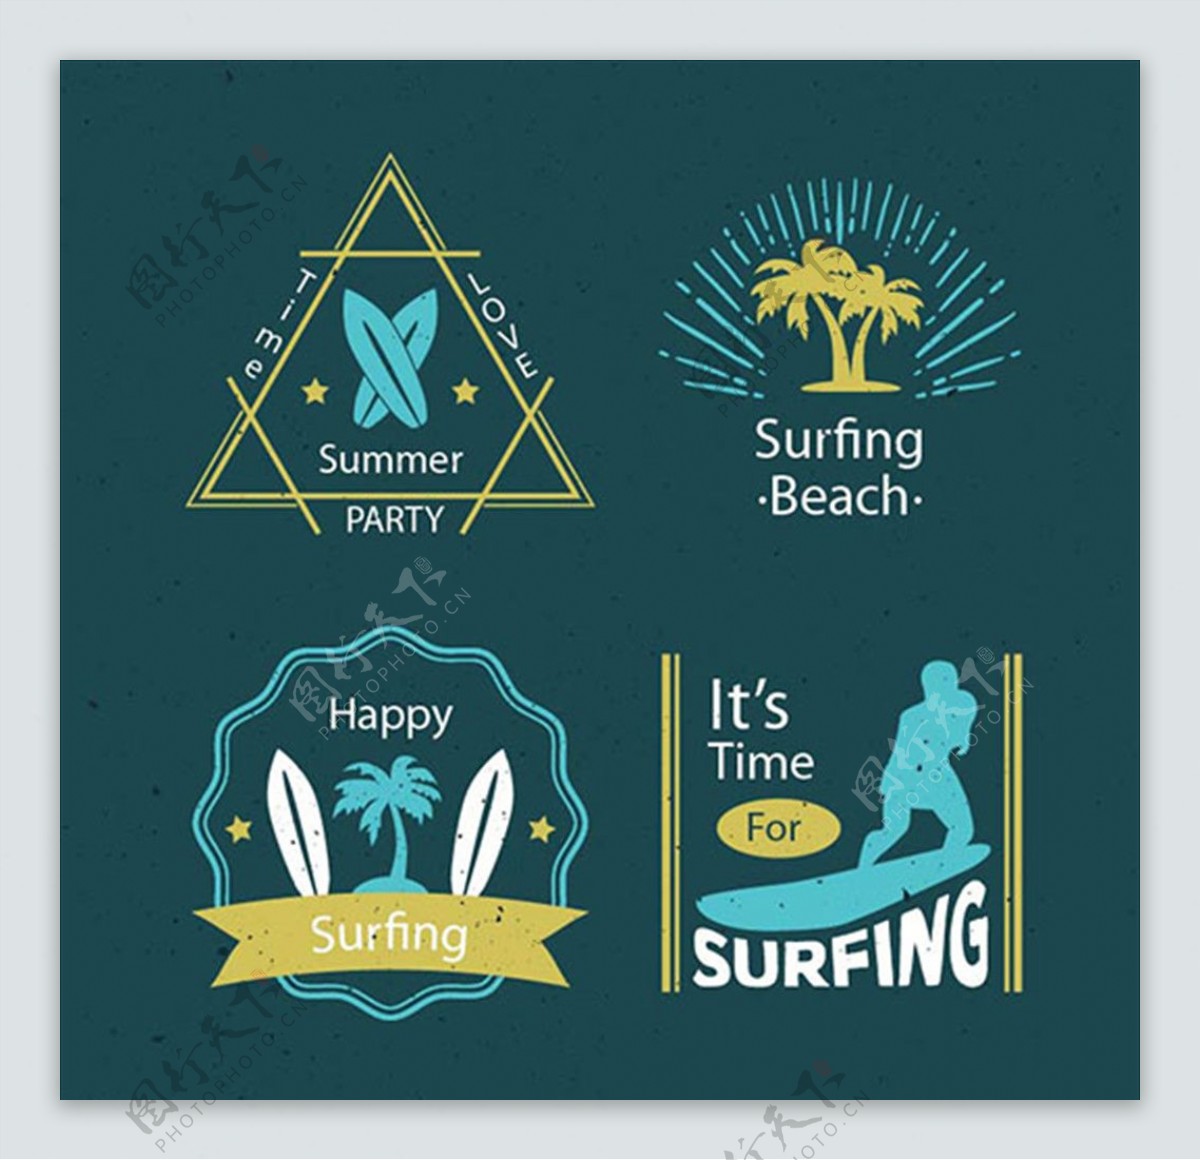 四款冲浪运动标志